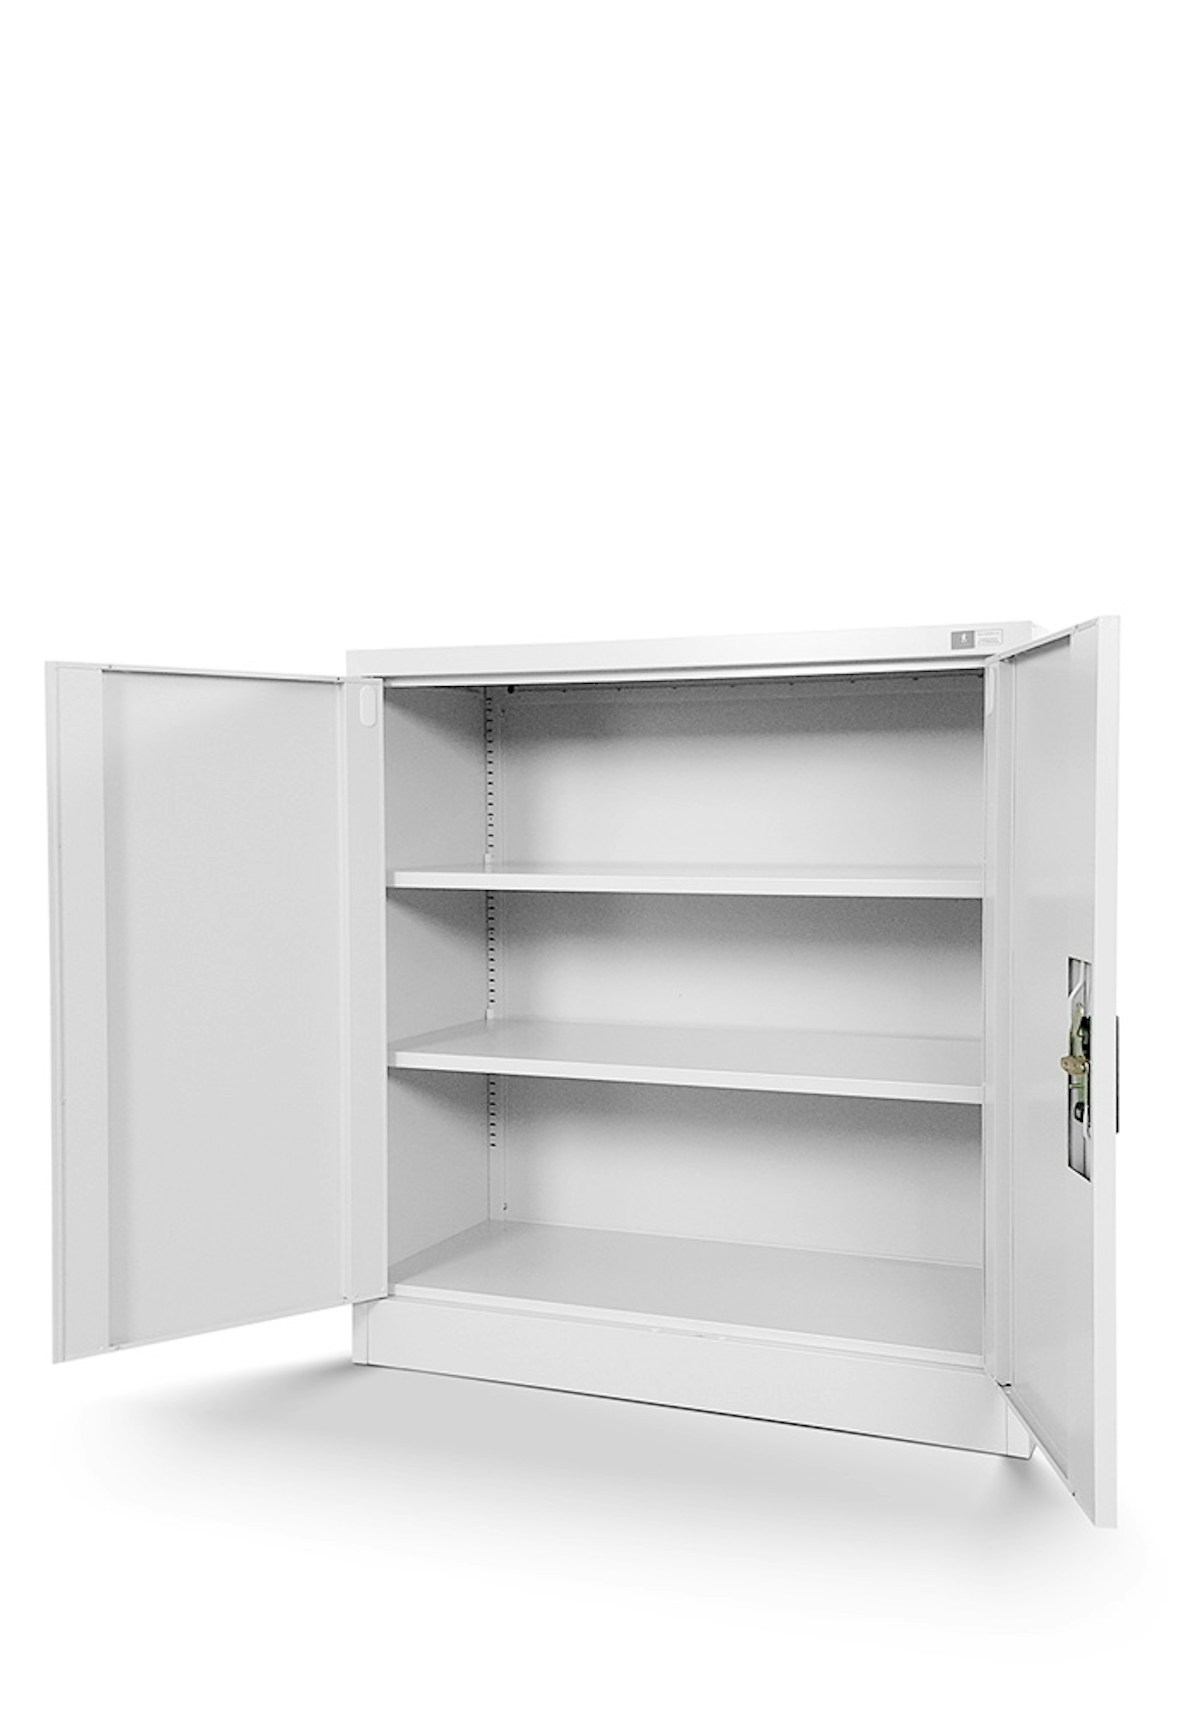 JAN NOWAK model BEATA metalowa szafka z drzwiami: biała